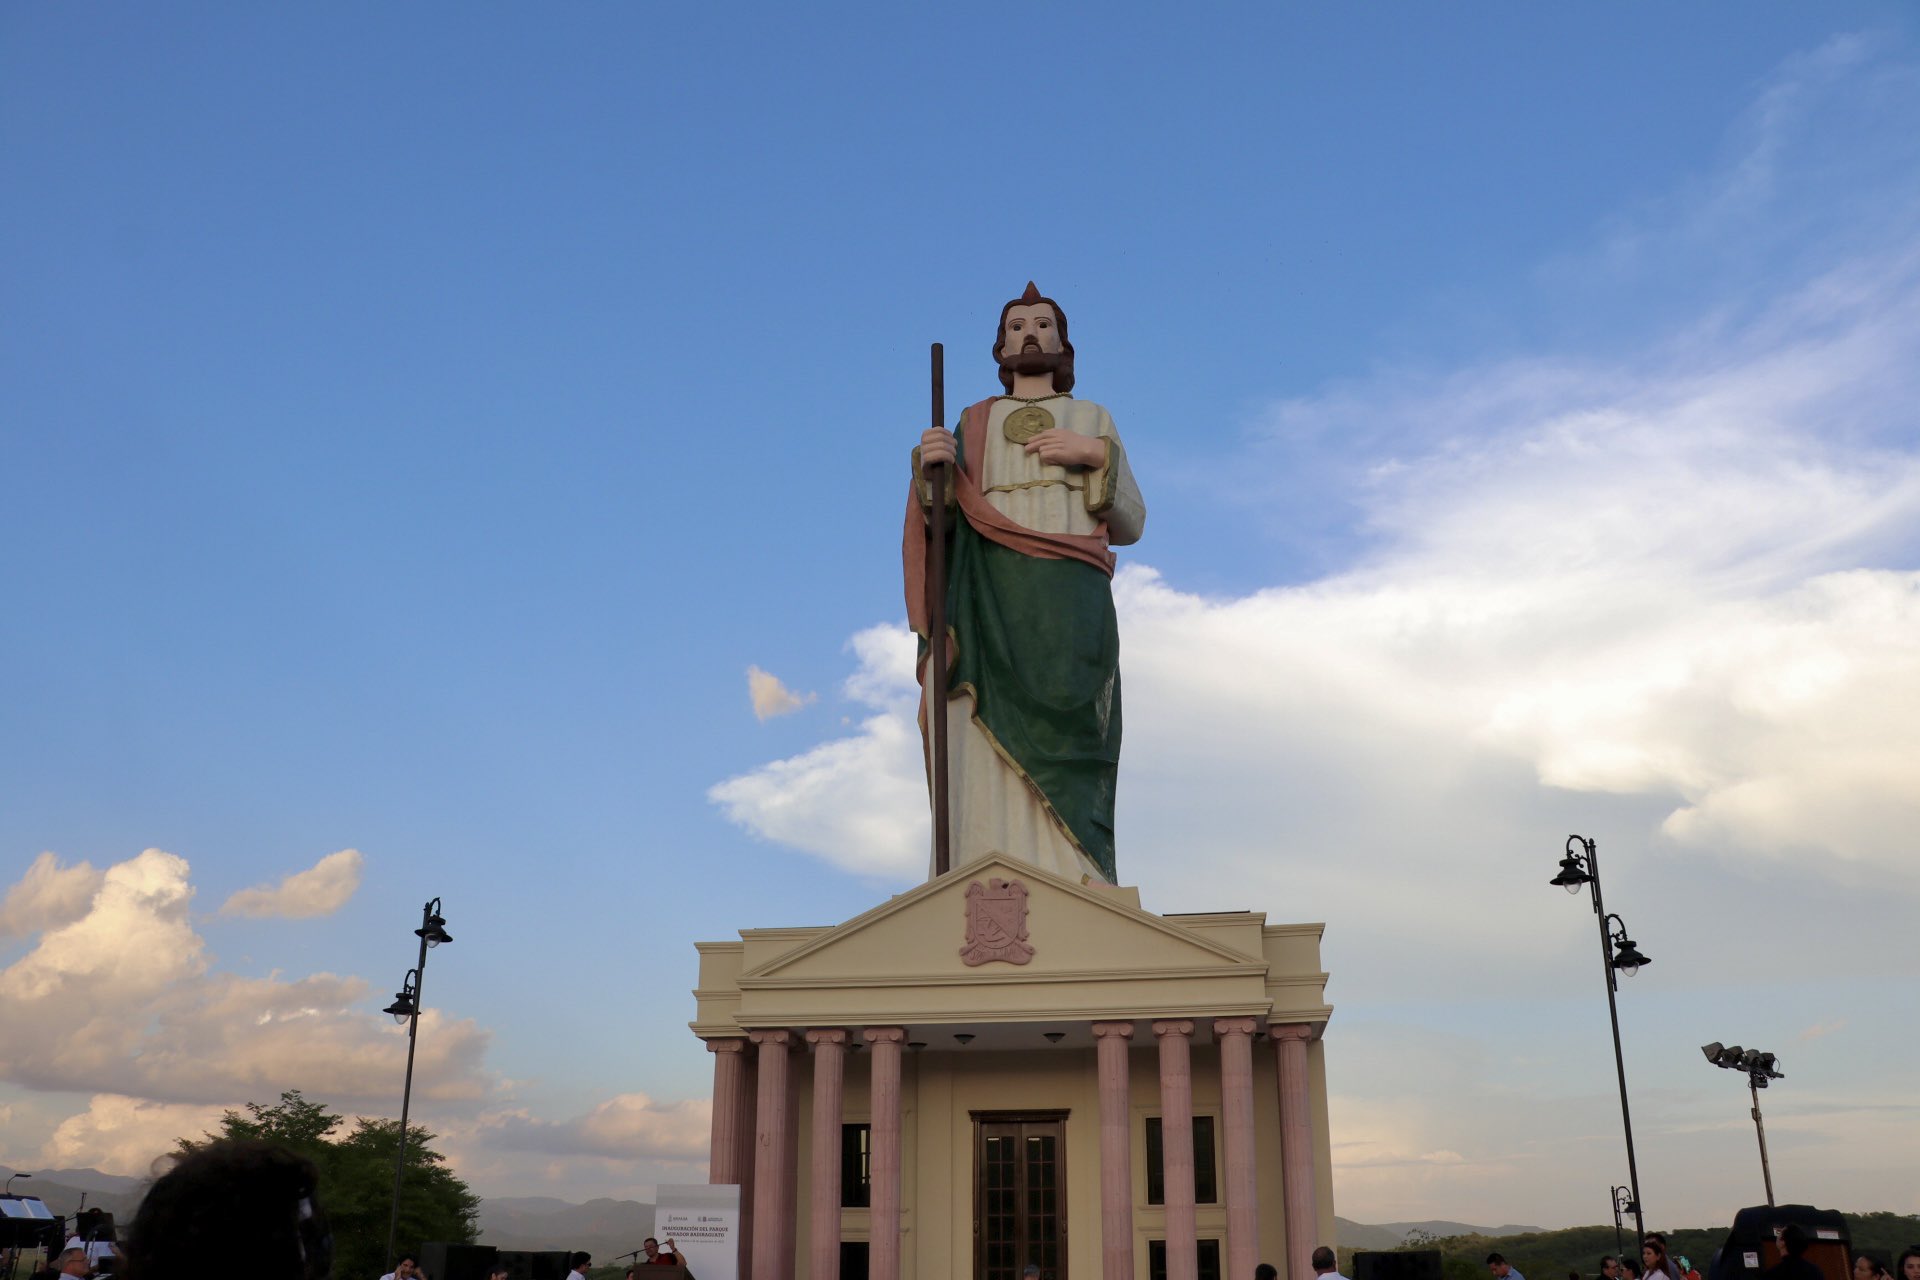 Hoy es Día de San Judas Tadeo. - Bonito León Guanajuato